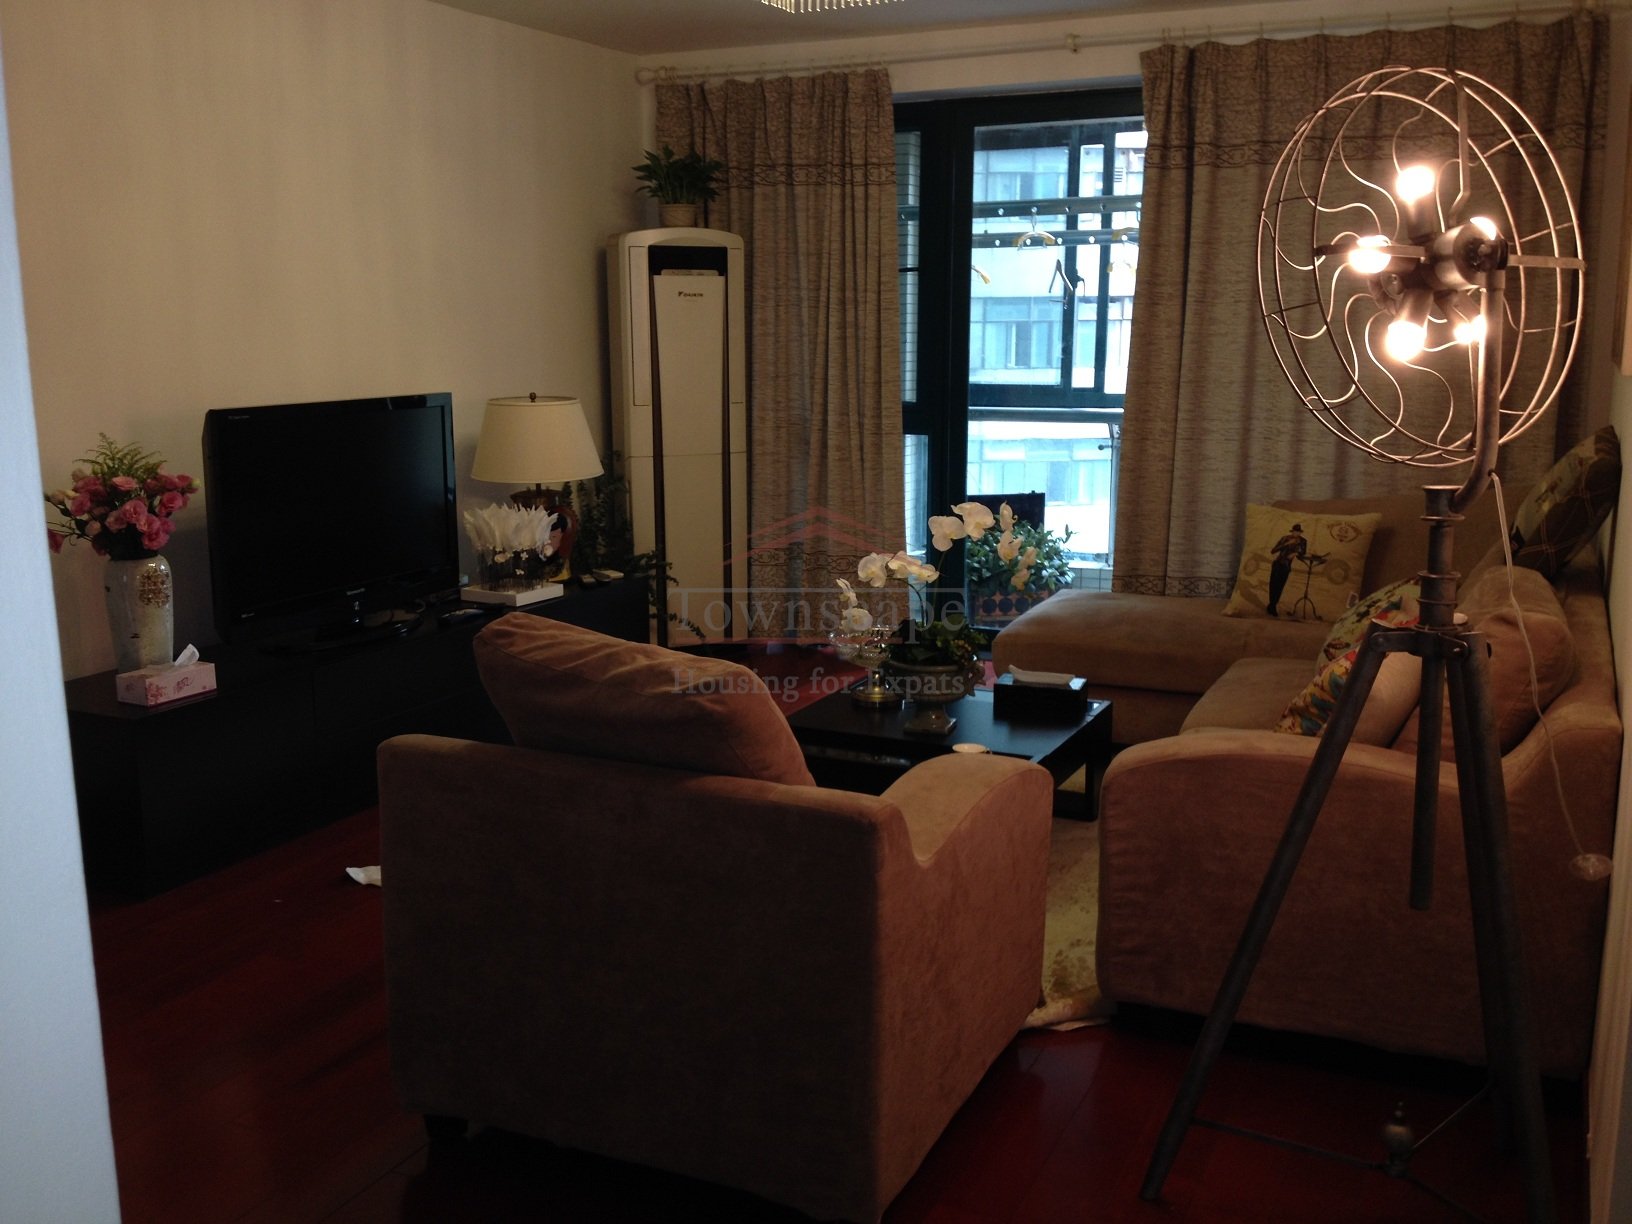 Rent apartment in Shanghai  Exquisite 3 BR Regents park apartment near Line 2/3/4